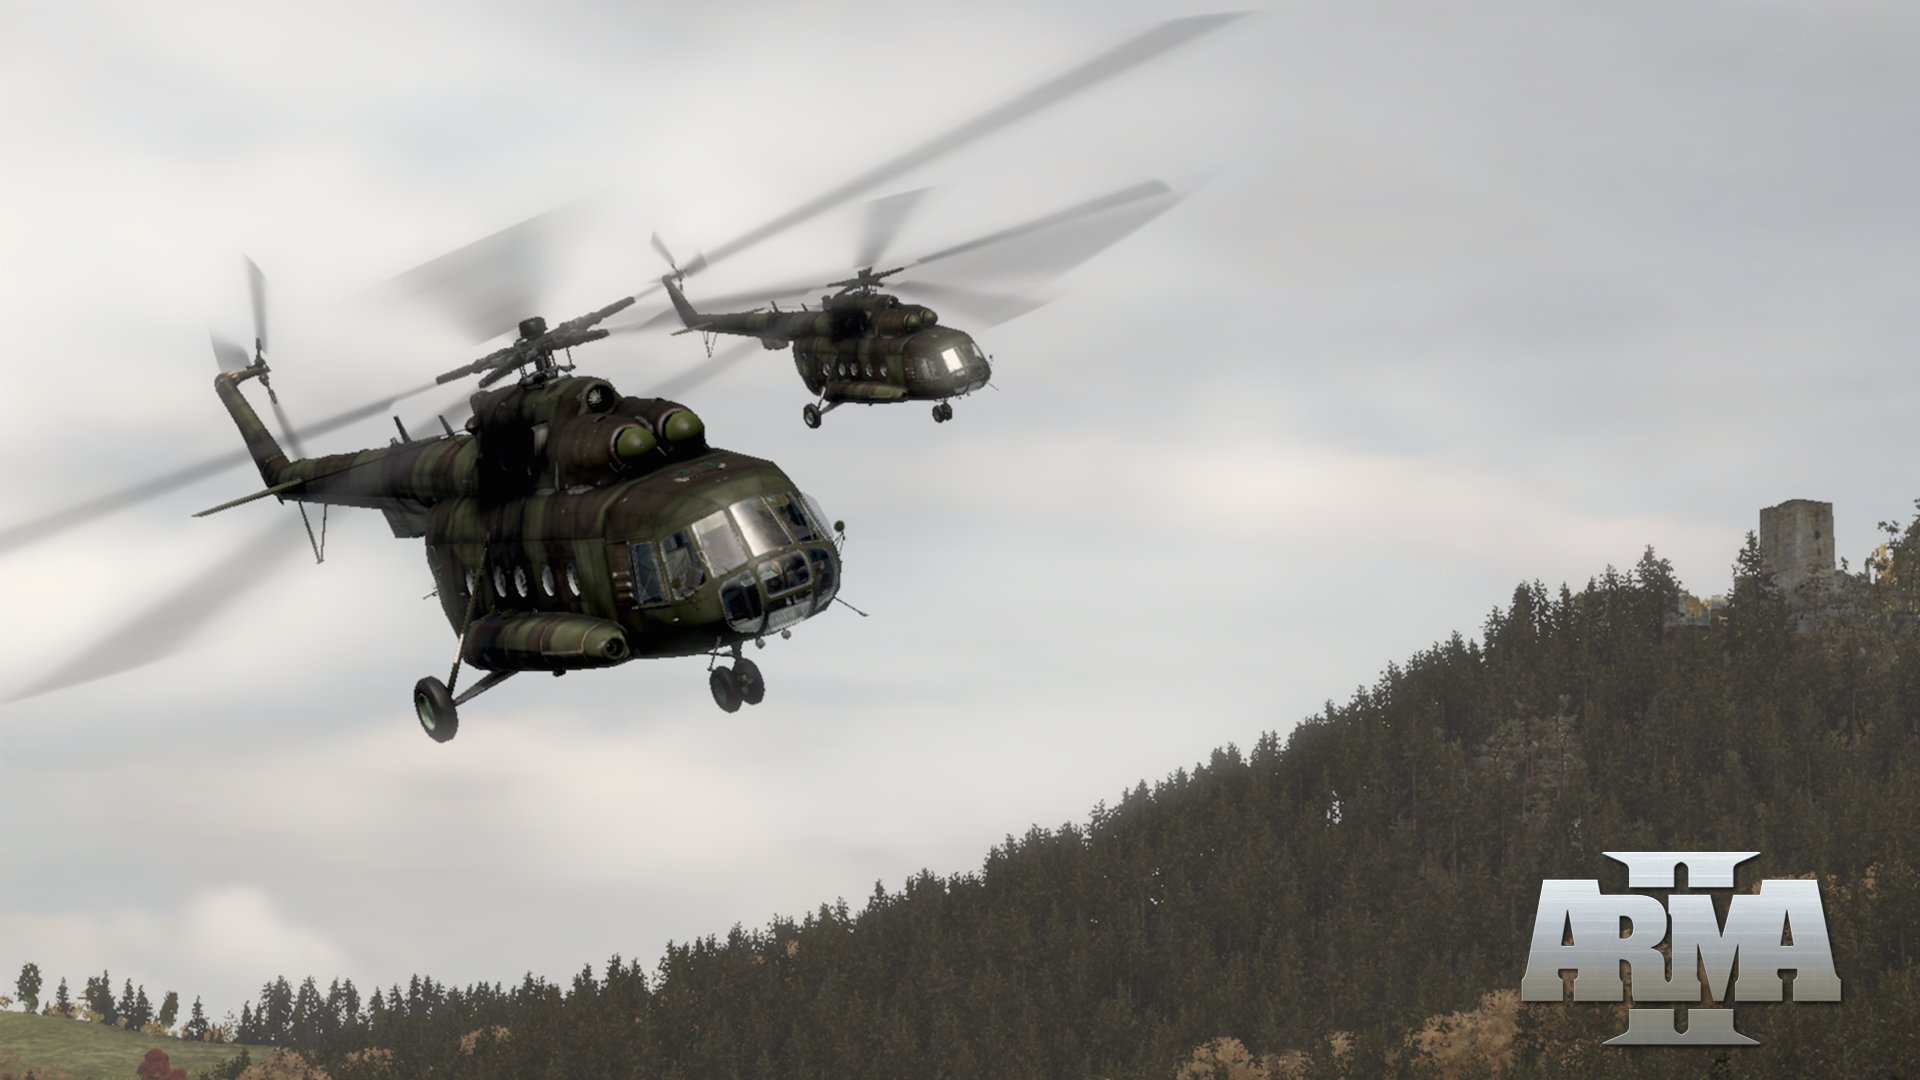 Вертолеты армы. Арма 2 вертолеты. Арма 2 мини вертолет. Arma 2 вертолетик. Одноместный вертолет Arma 2.